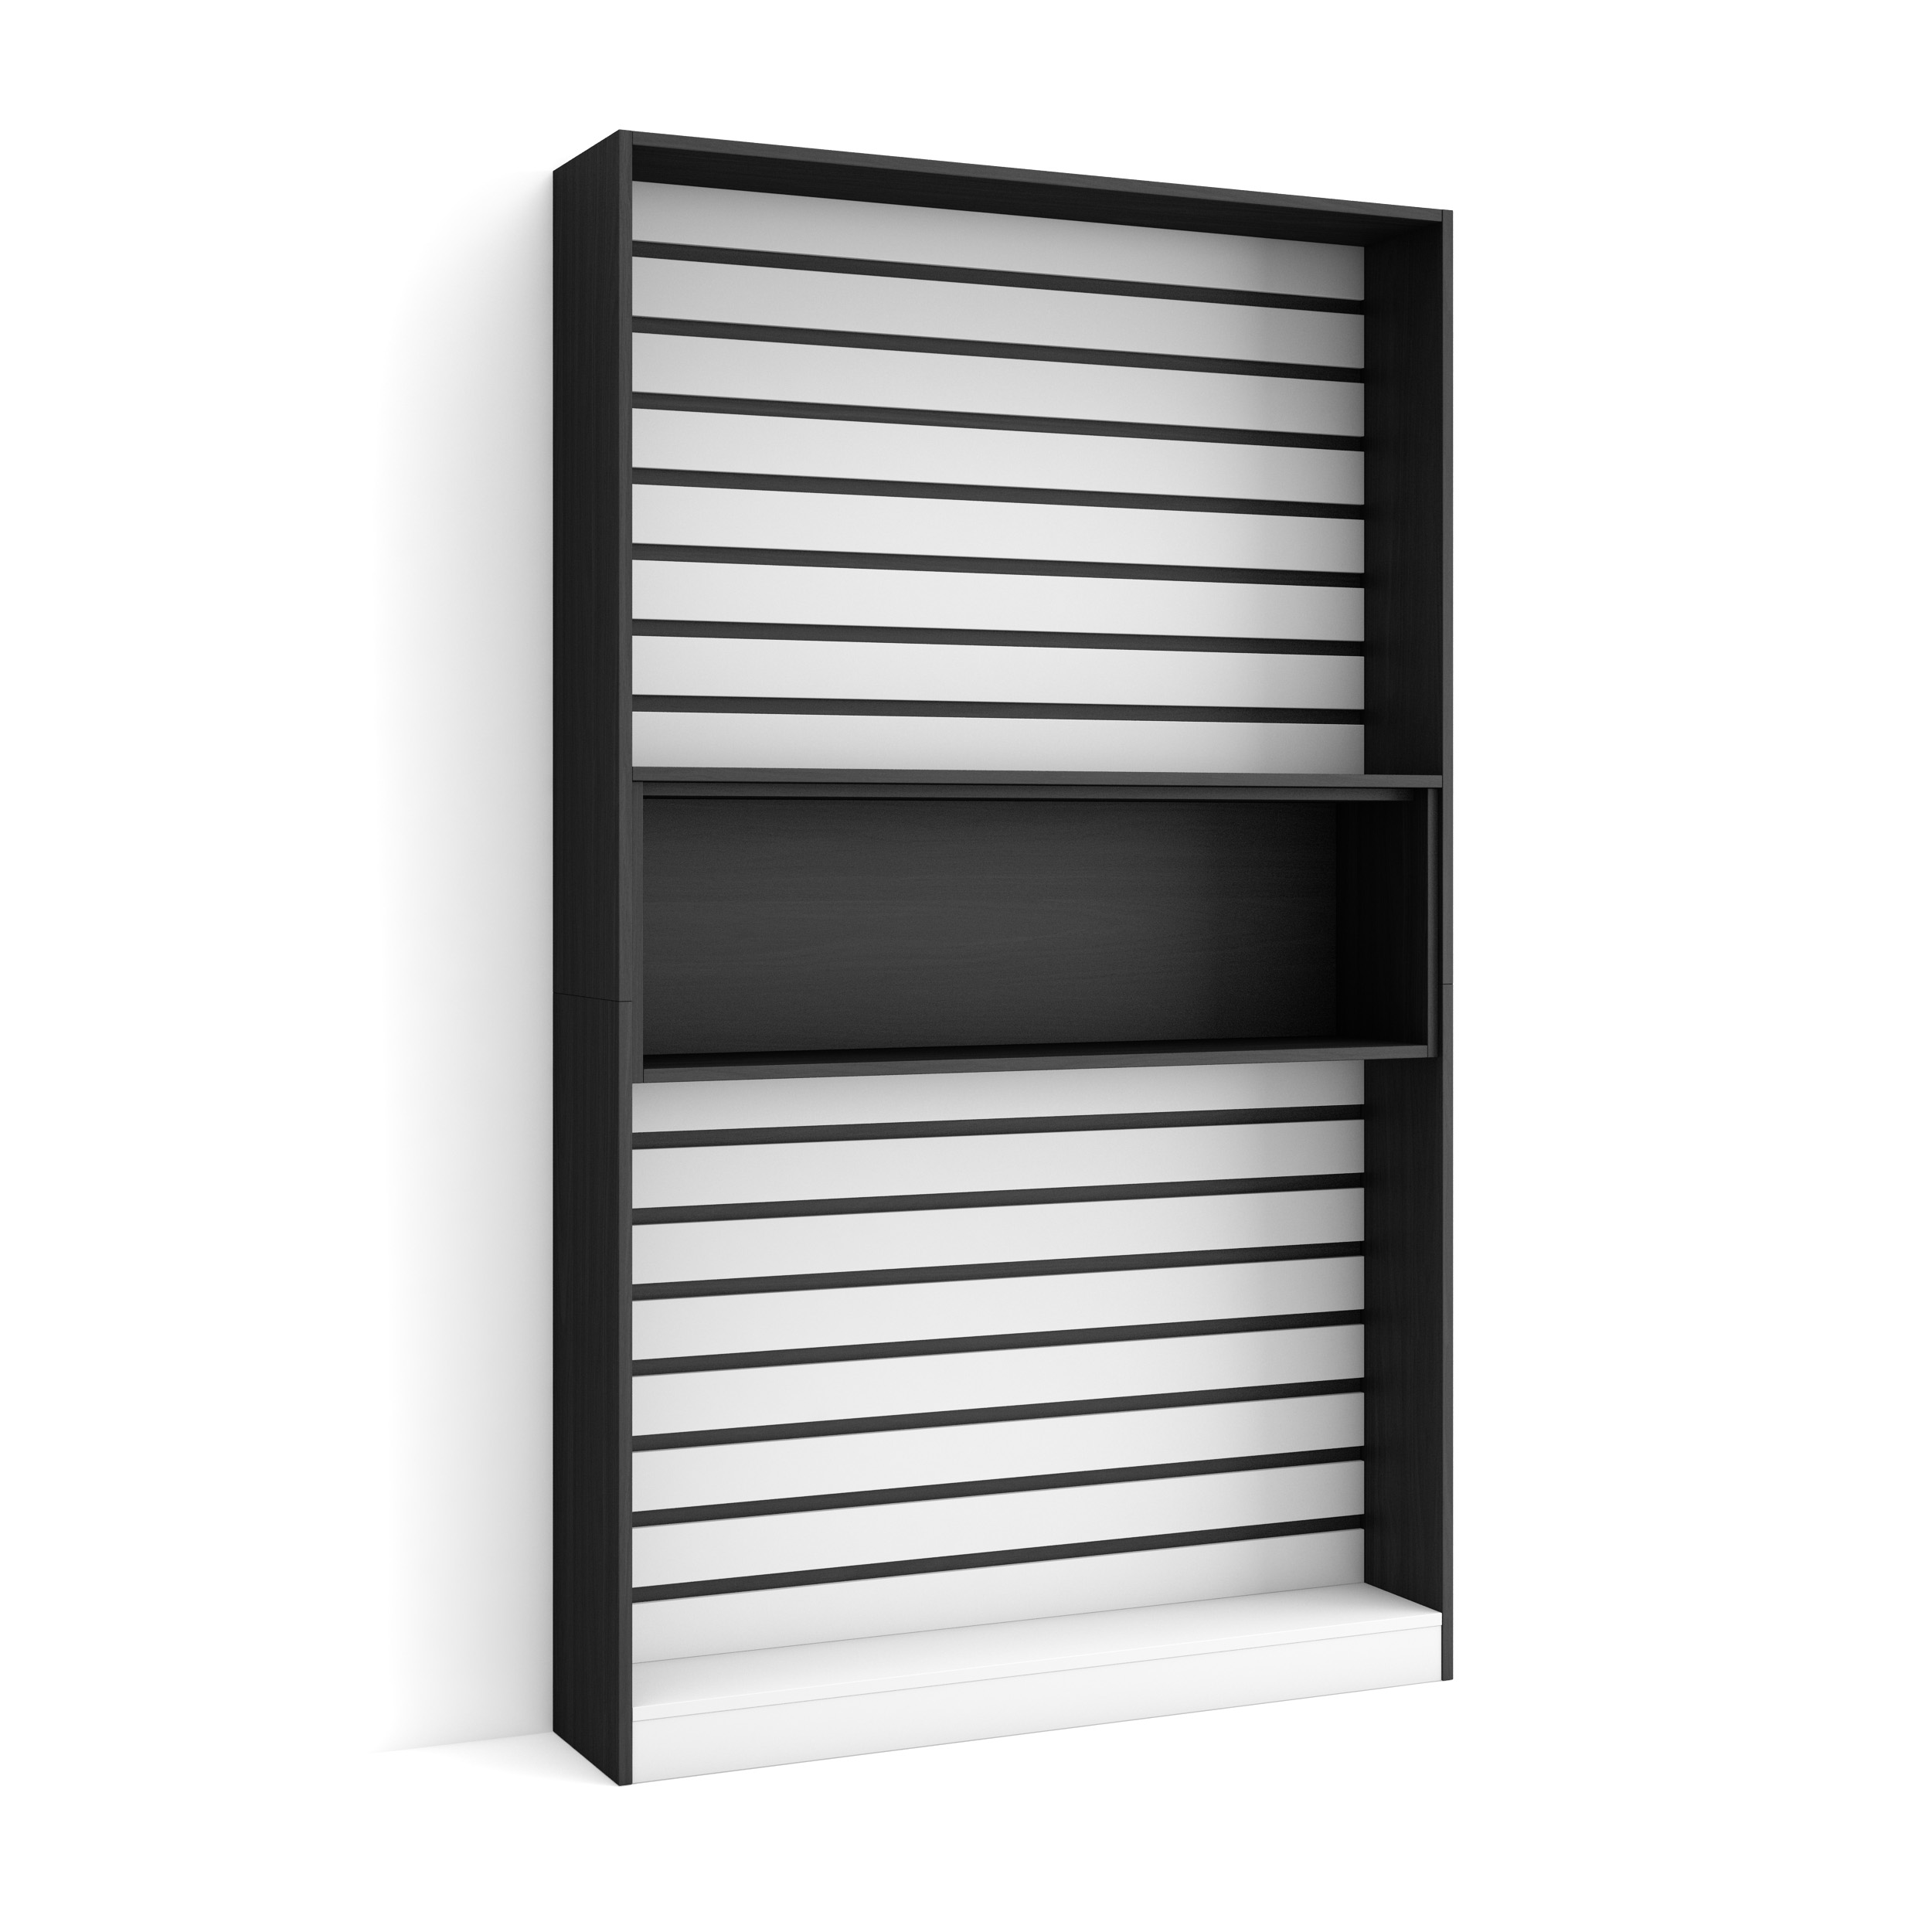 Librería estantería, 110x186x25cm, Blanco y negro